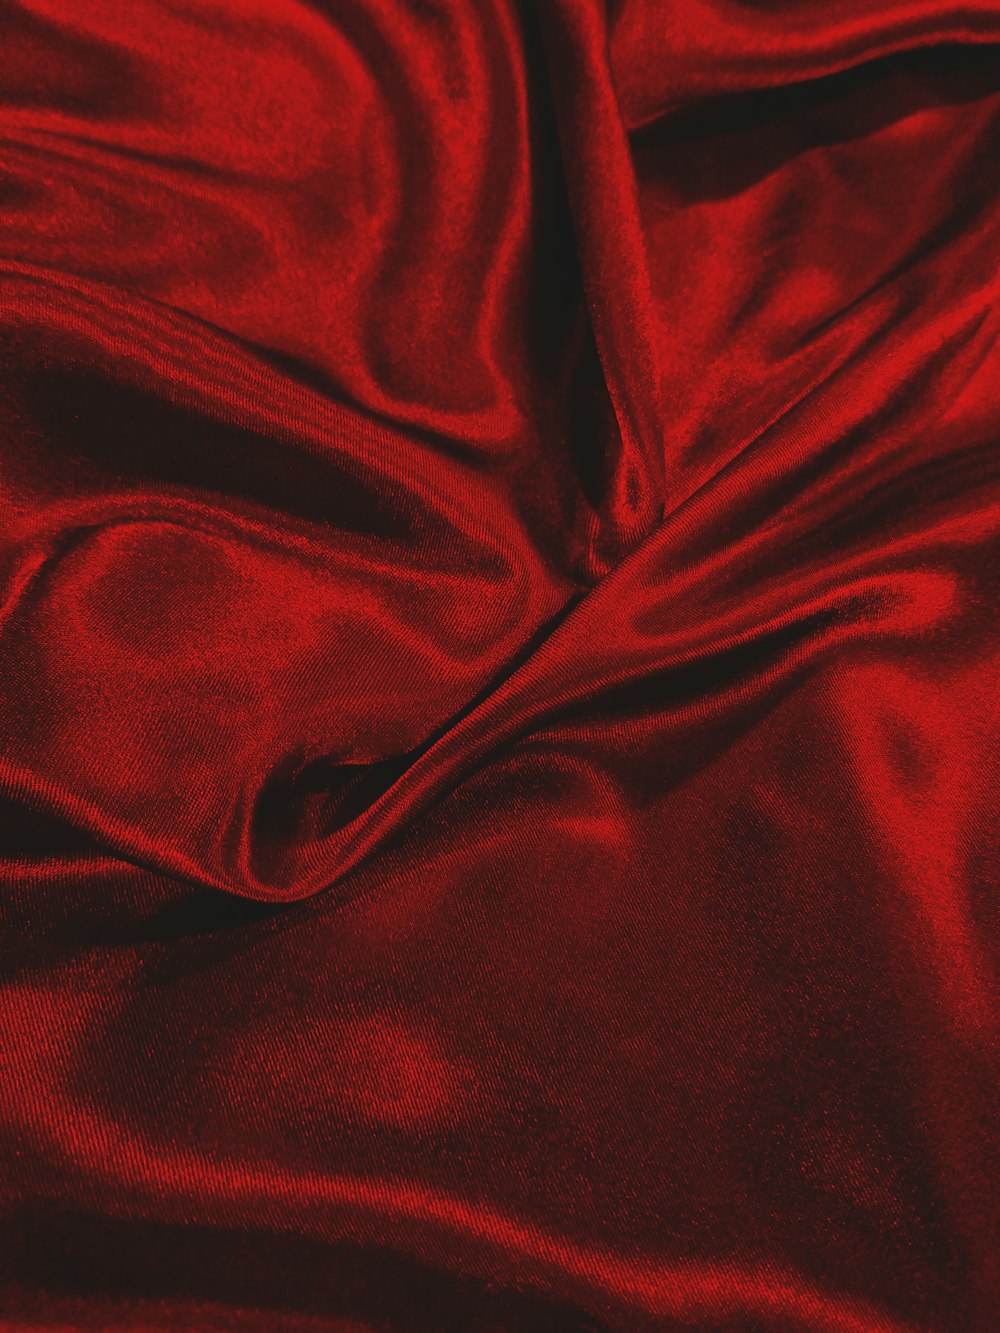 tessuto rosso